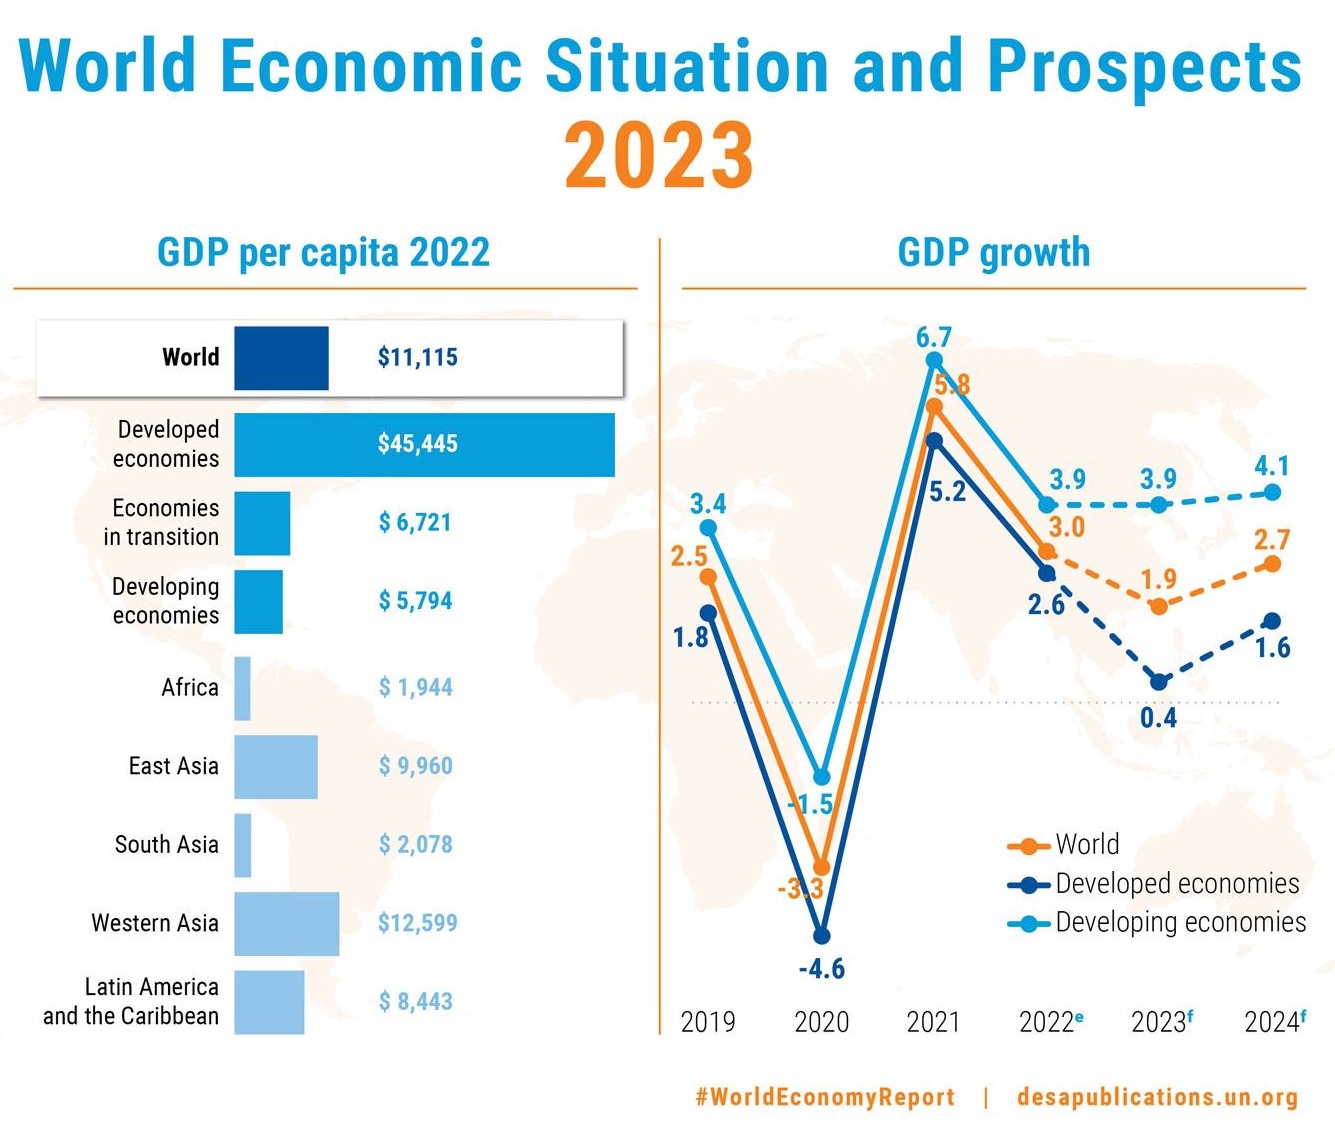 유엔 경제사회처가 발표한 ‘2023 세계 경제 상황과 전망’ 보고서 주요 내용. 유엔 홈페이지